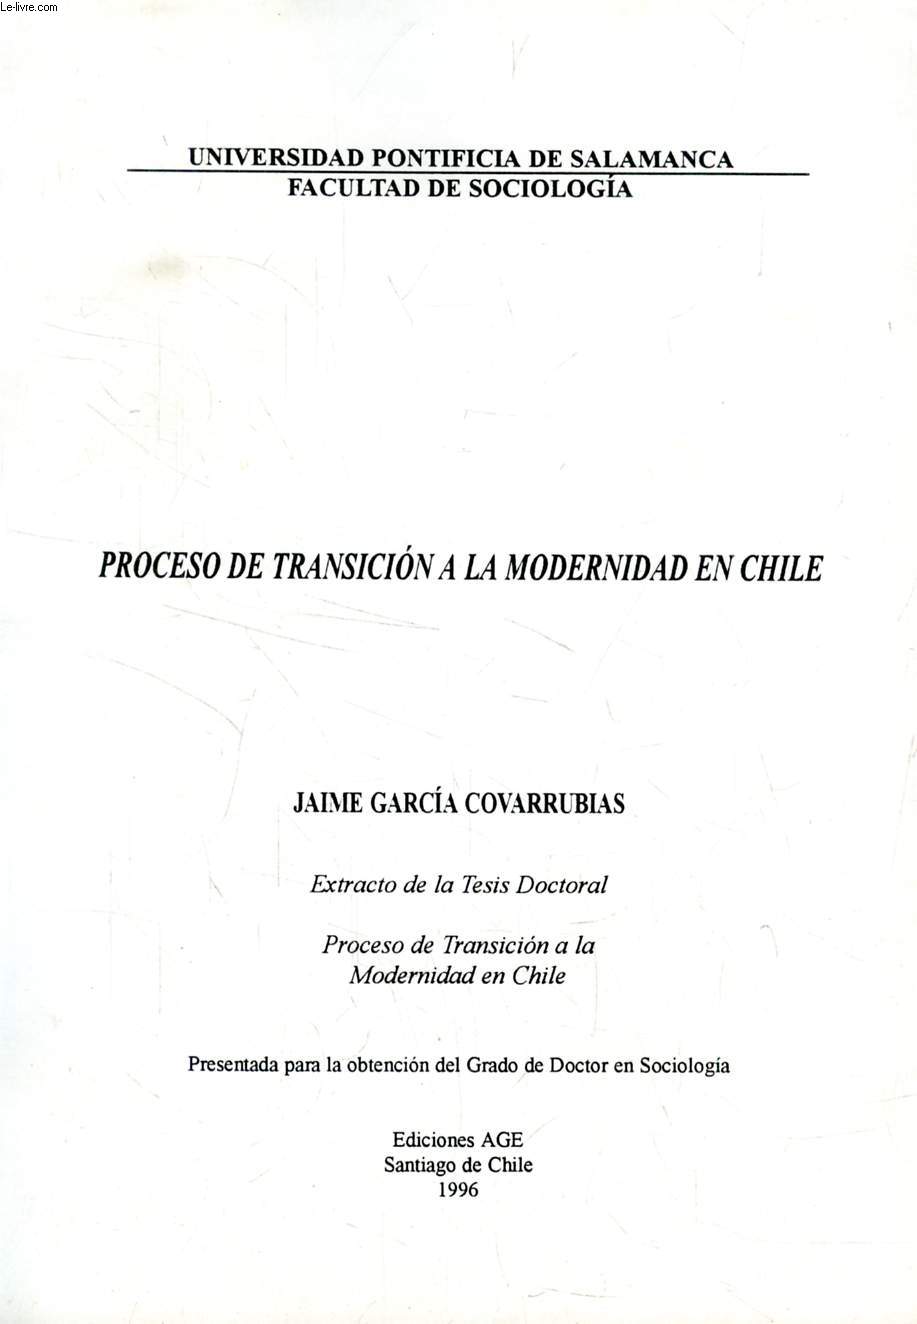 PROCESO DE TRANSICION A LA MODERNIDAD EN CHILE (EXTRACTO DE LA TESIS)